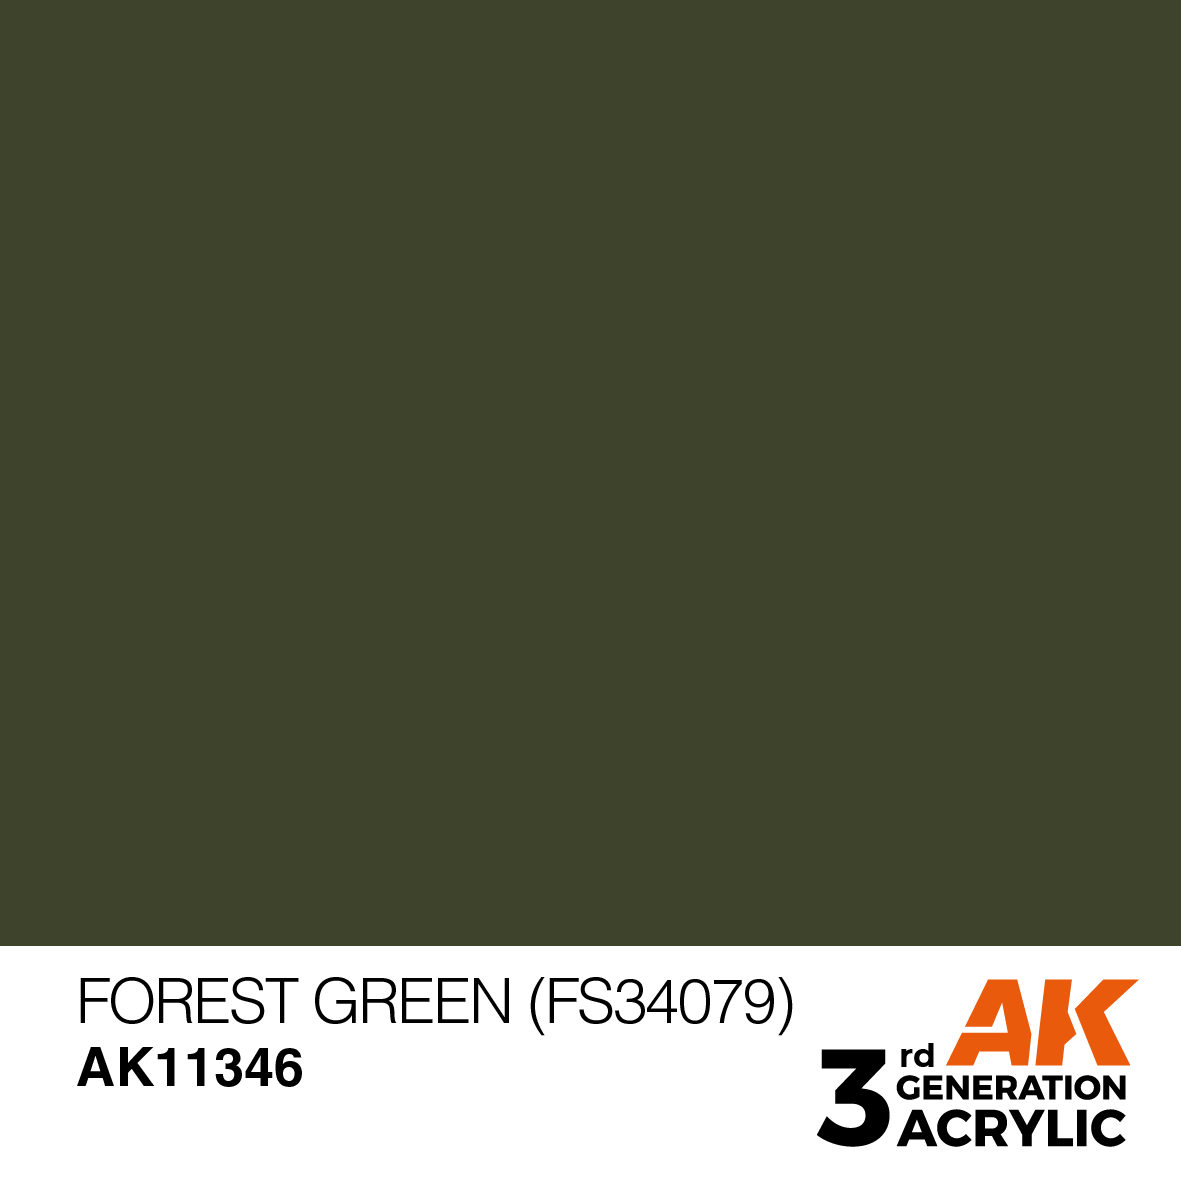 FOREST GREEN (FS34079) – AFV